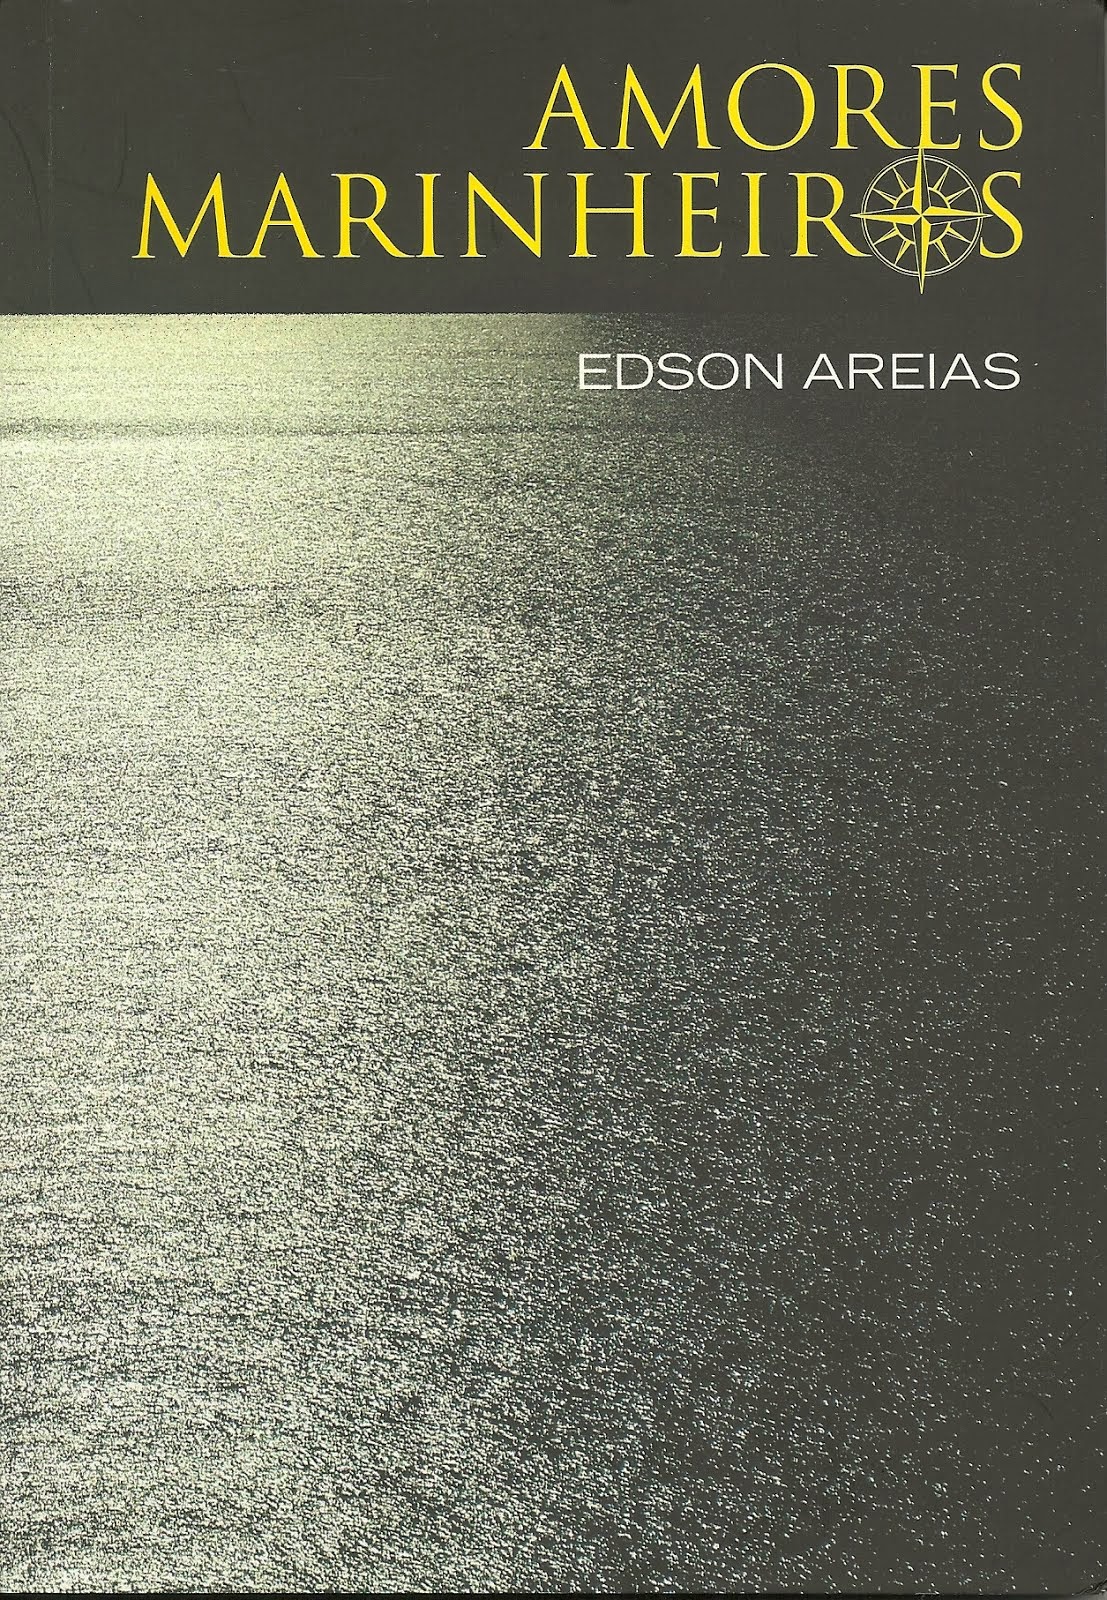 "Amores marinheiros", Edson Areias